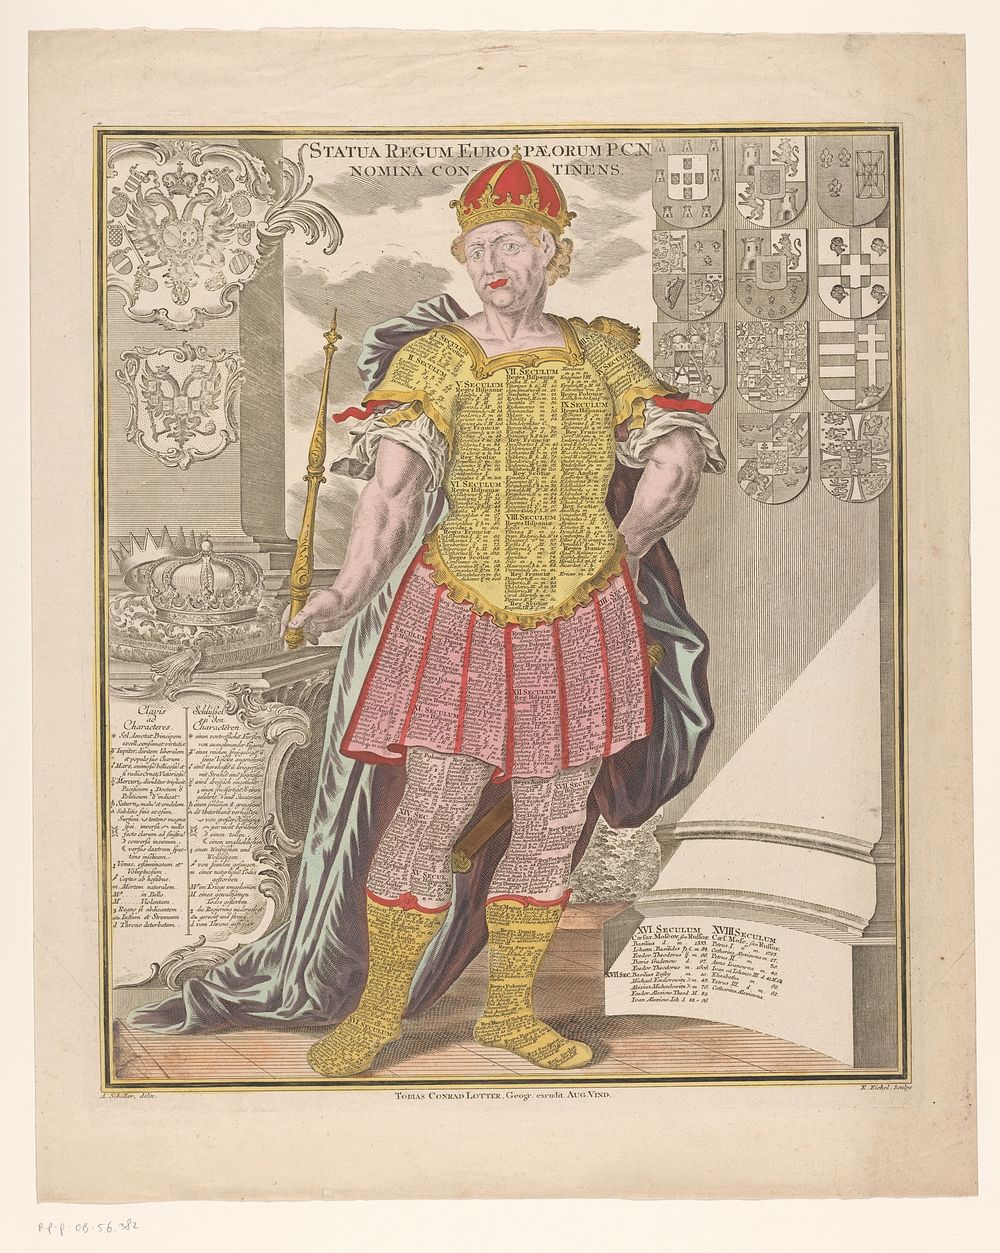 Koning met op zijn kleding de namen van koningen door de geschiedenis heen (1727 - 1782) by Emanuel Eichel, August Scheller…